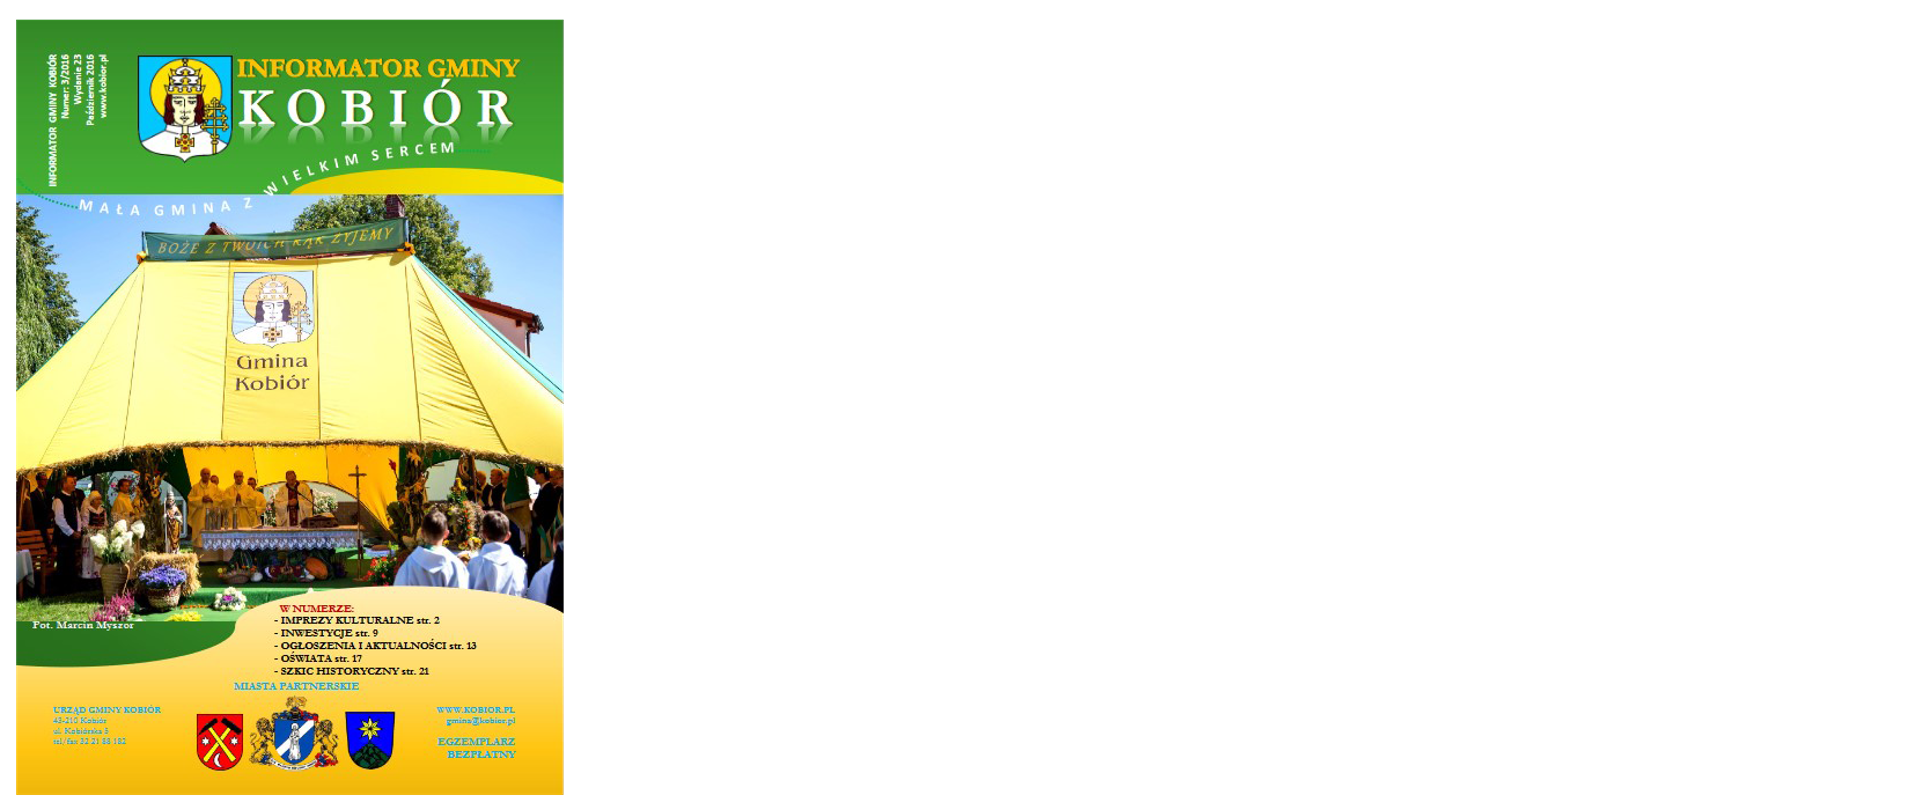 Zdjęcie przedstawia okładkę informatora Gminy Kobiór z października 2016 roku na której widać Herby Gminy Kobiór oraz miast partnerskich a także kapłanów celebrujących Mszę Świętą